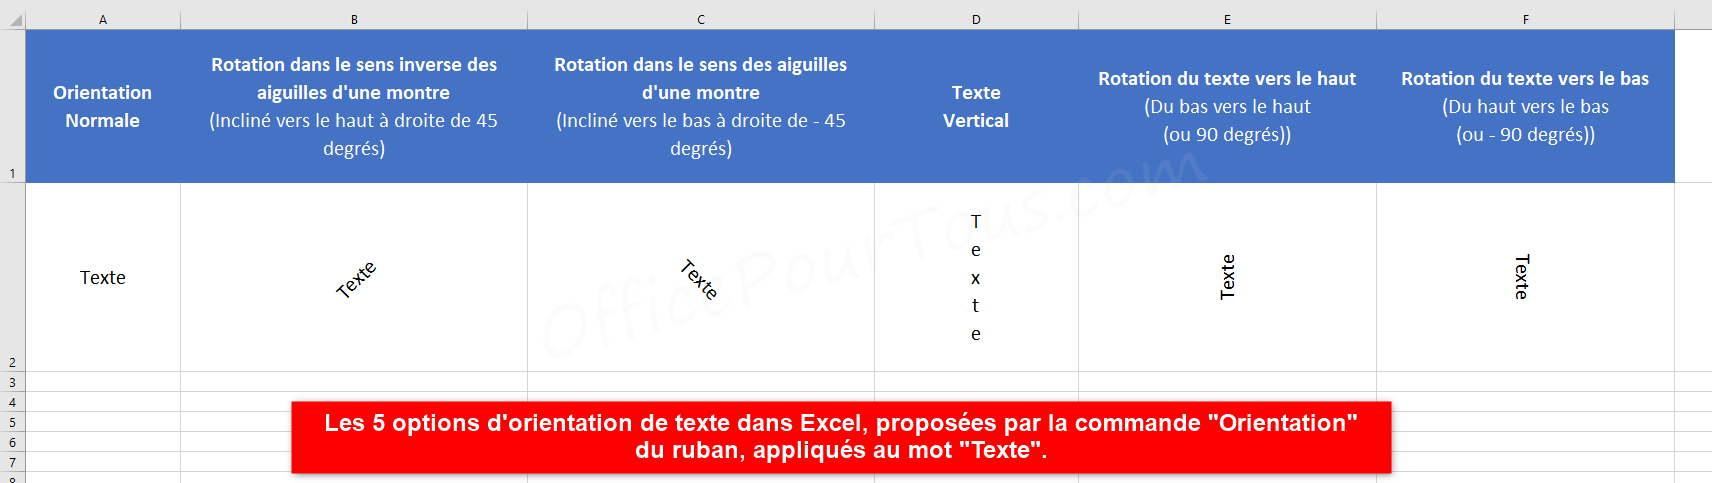 Options d'orientation de texte dans Excel via le ruban